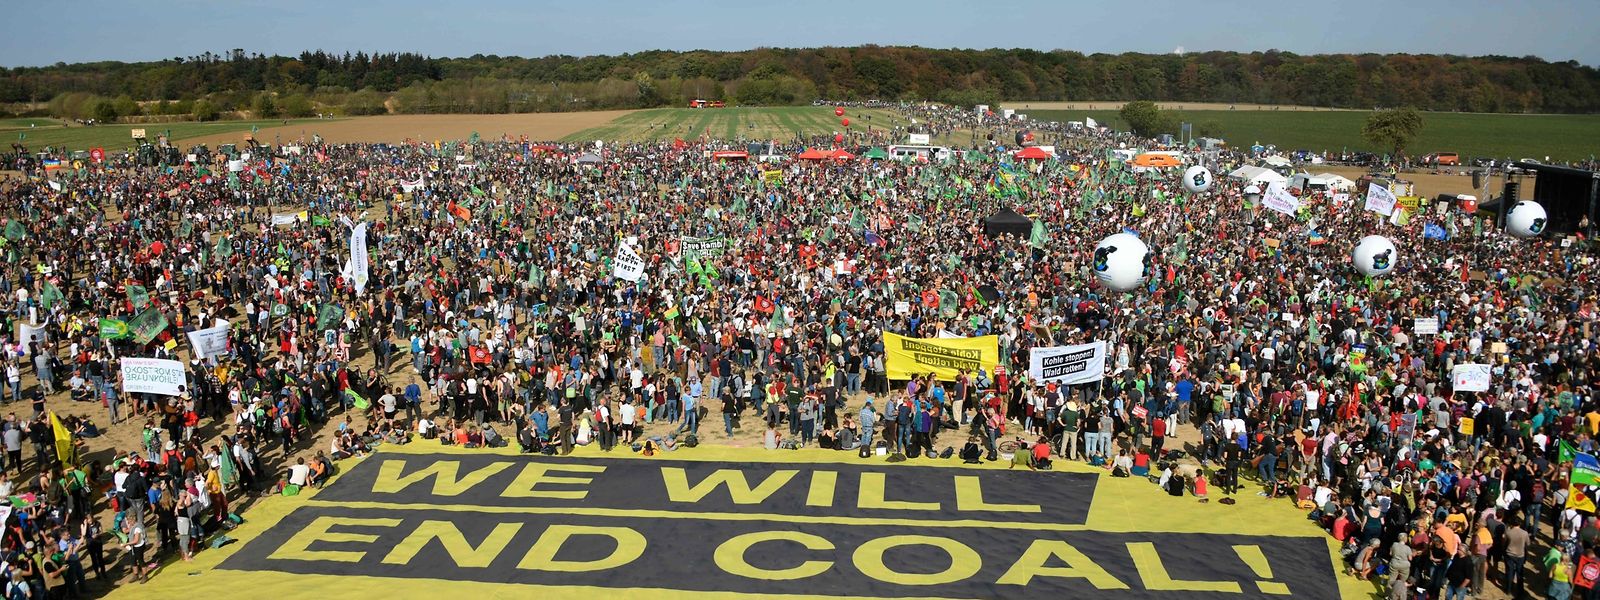 Nach dem vorläufigen Rodungsstopp für den Hambacher Forst, haben am Samstag dem Veranstalter zufolge 50.000 Menschen an einer Großdemonstration teilgenommen.